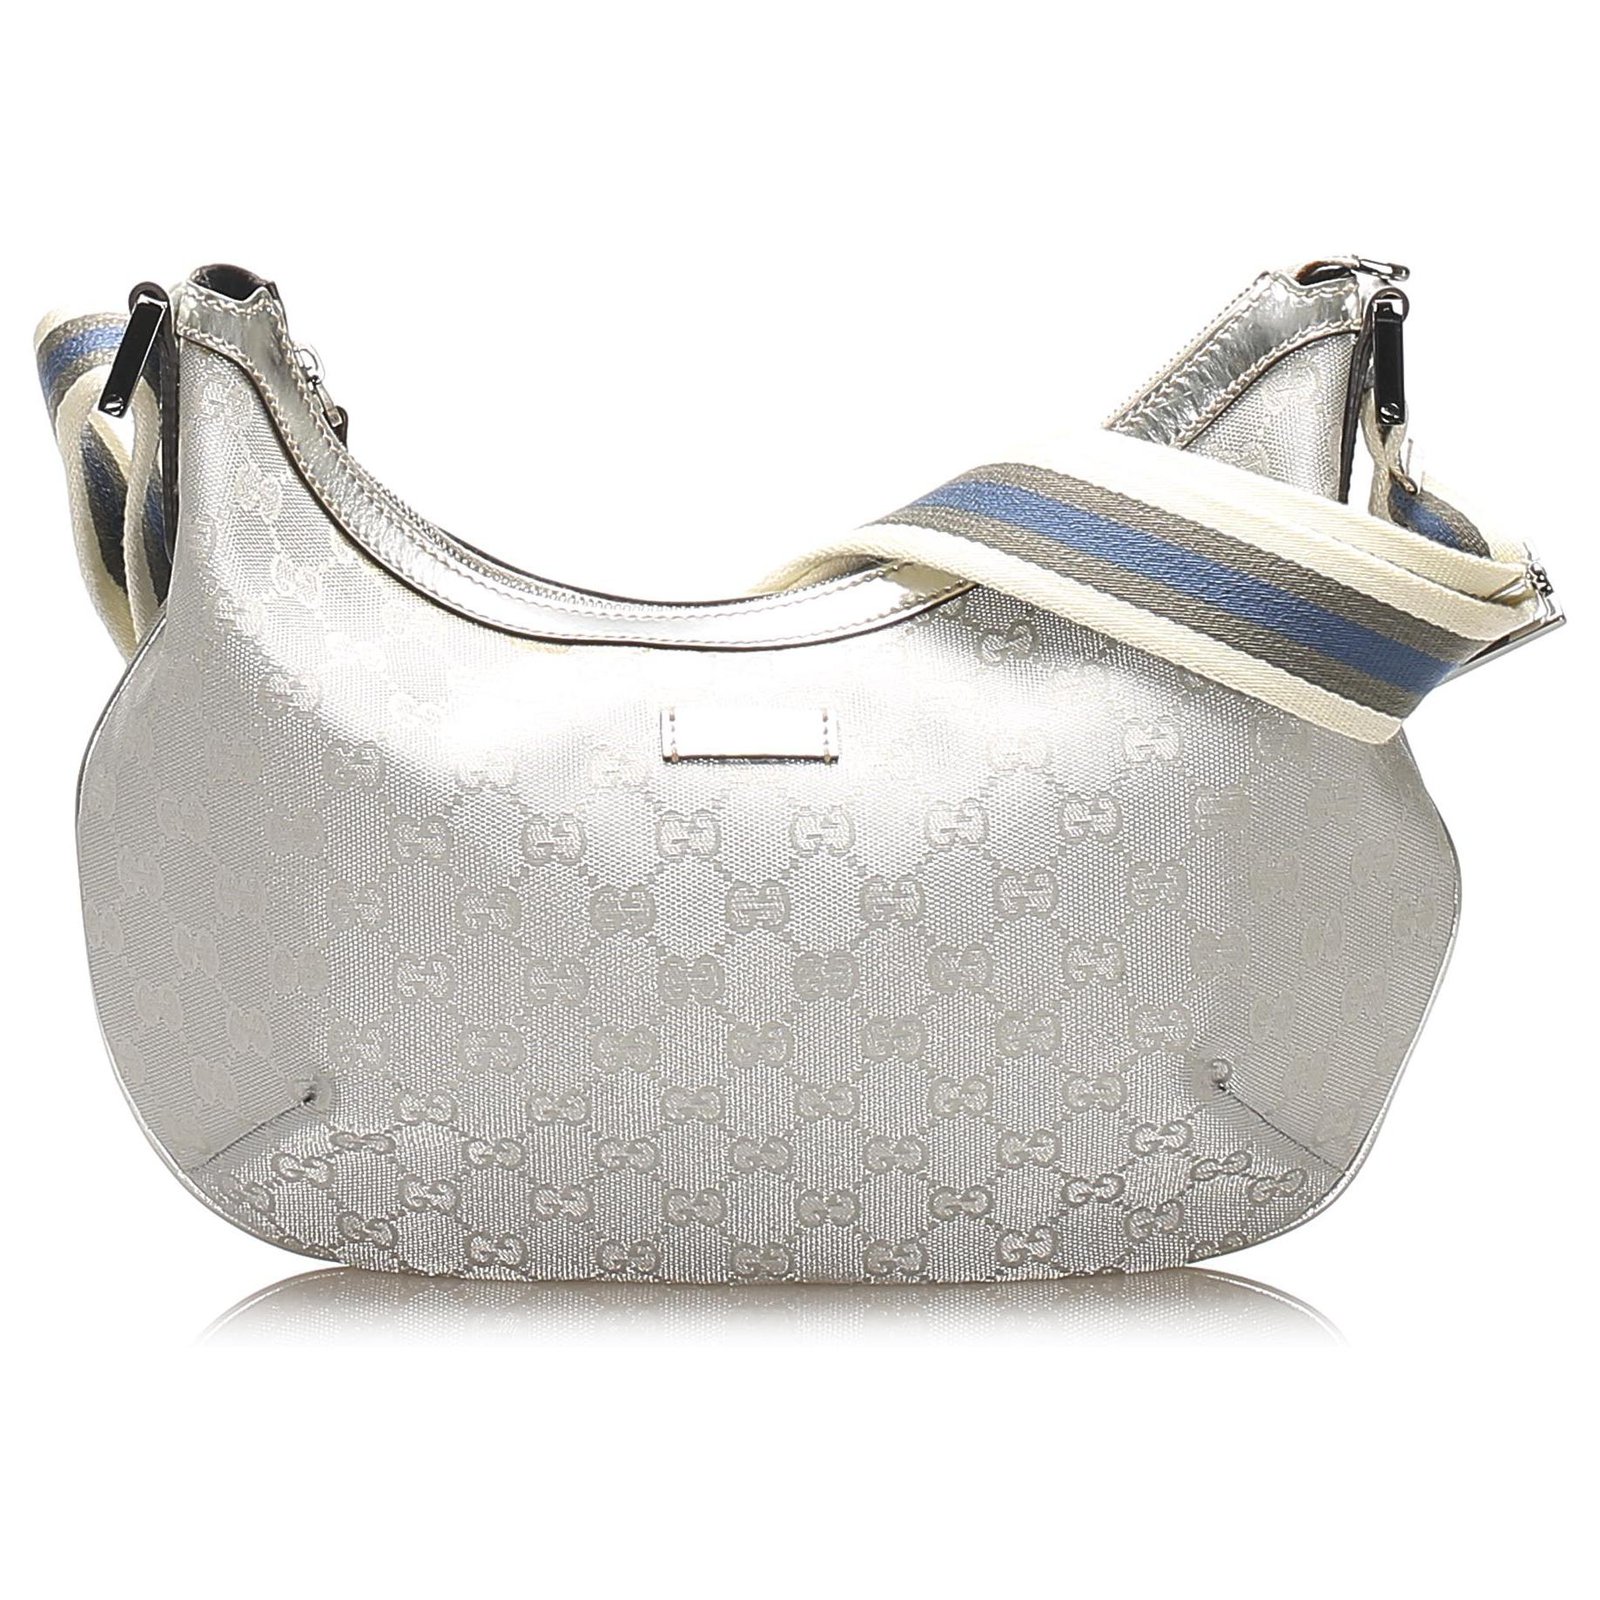 gucci silver handbag